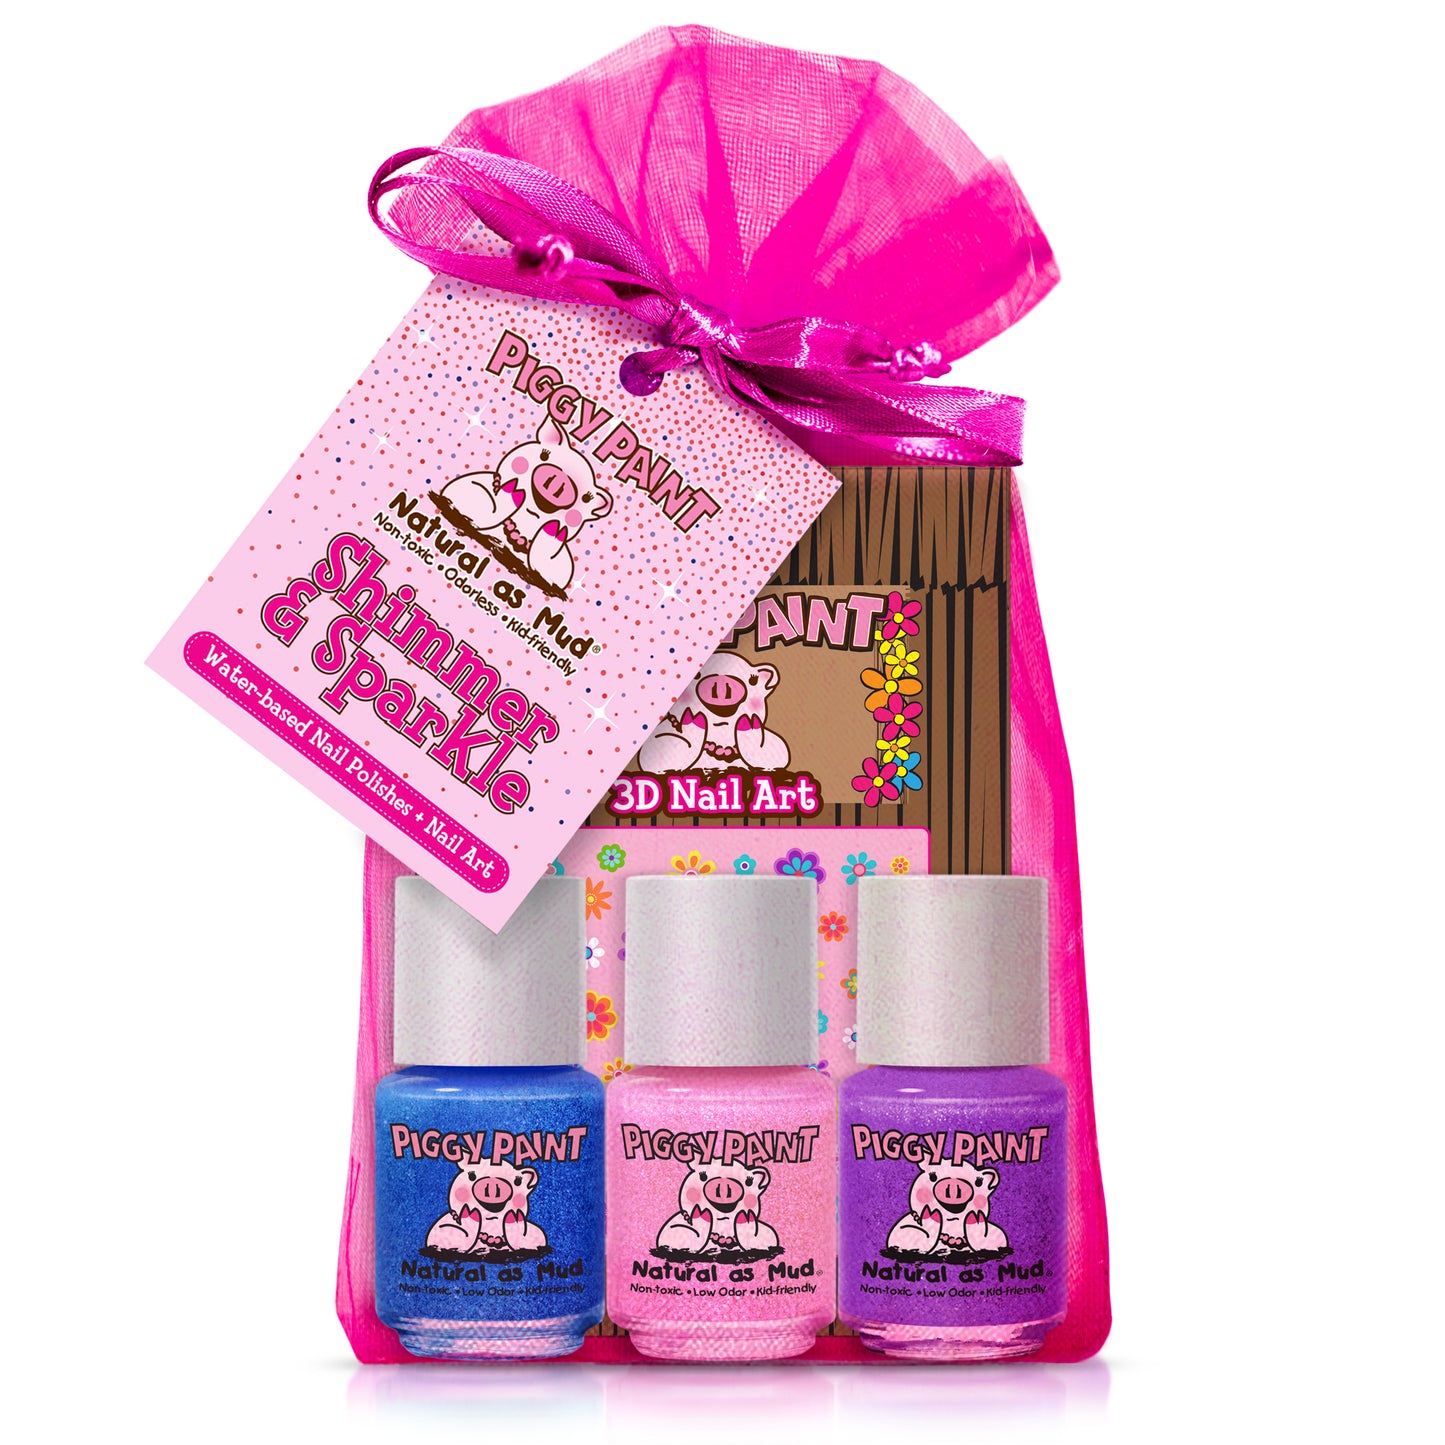 New Sealed Target Beauty Box Women's Recline & Unwind Gift Set Shea Coconut  | eBay